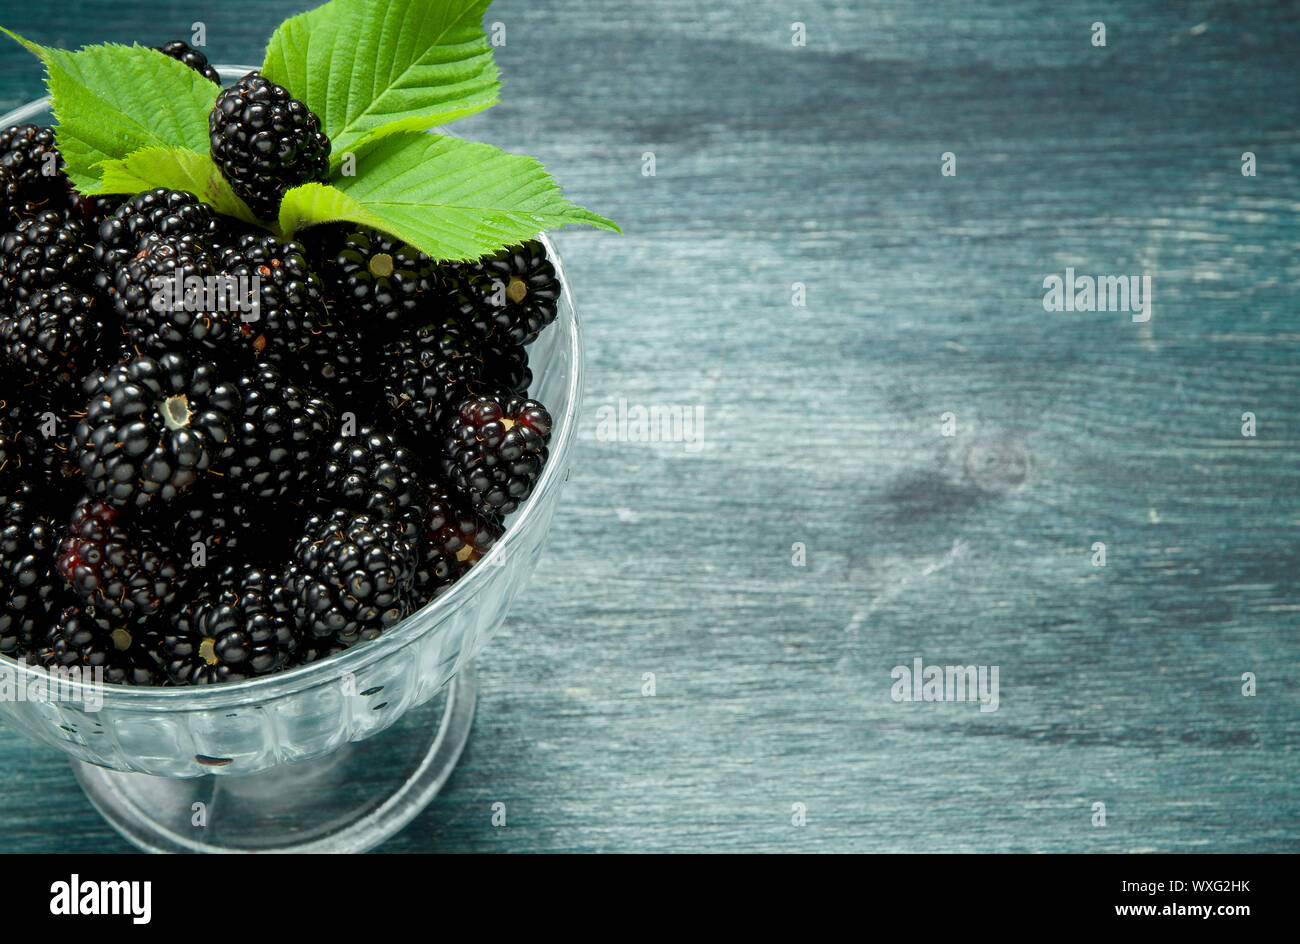 Blackberry frais. Blackberry juteux dans un bol sur une table en bois. Vue de dessus. Copier l'espace. Concept de récolte Banque D'Images